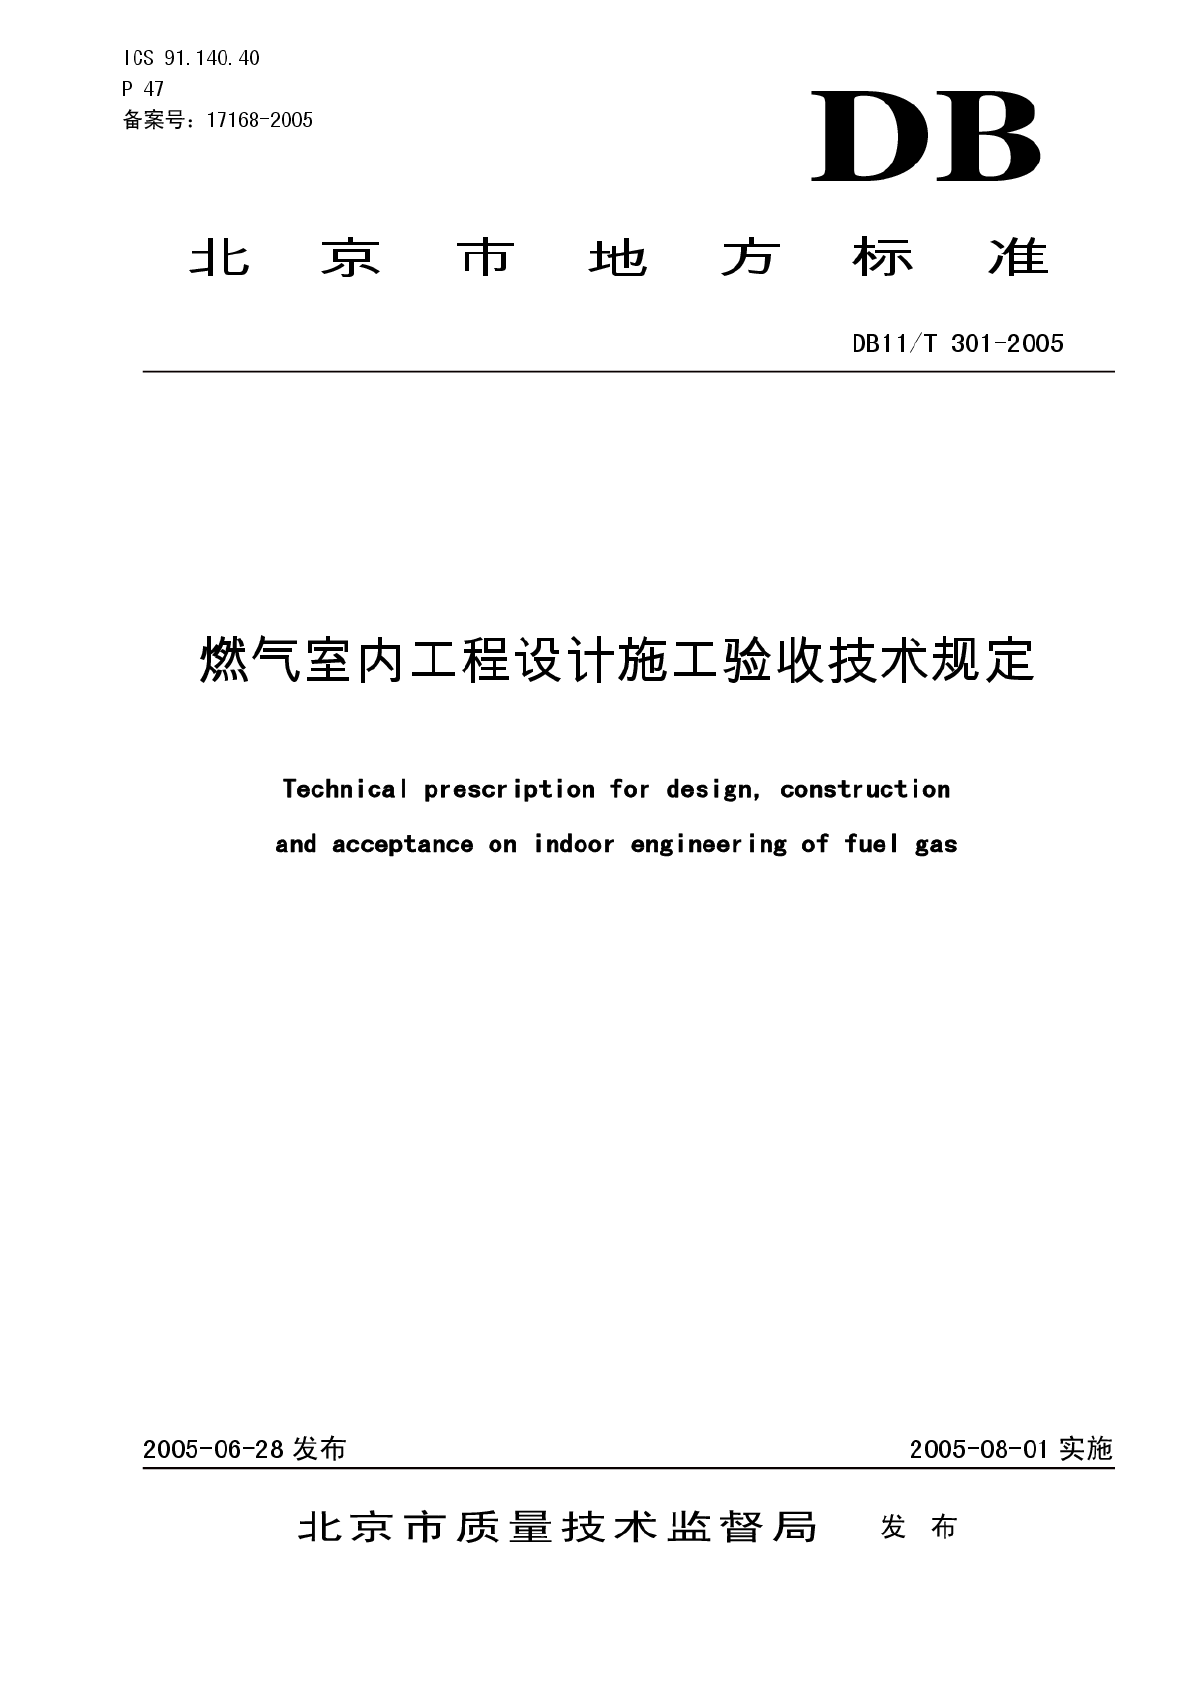 北京市地方标准《燃气室内工程设计施工验收技术规定》DB11/T301-2005